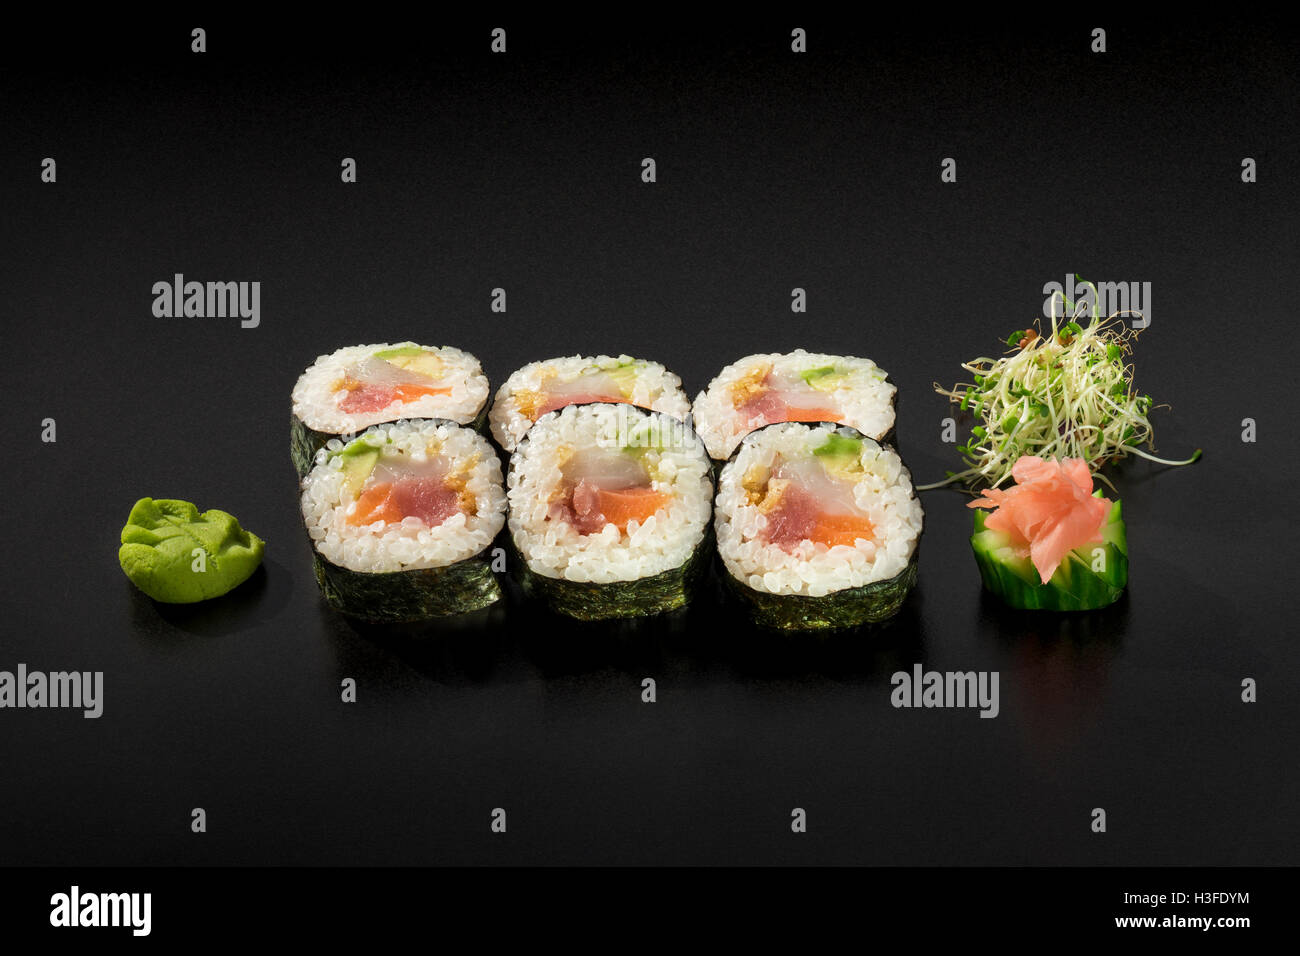 Petit ensemble rouleaux de sushi décoré de salade d'algues et wasabi Banque D'Images